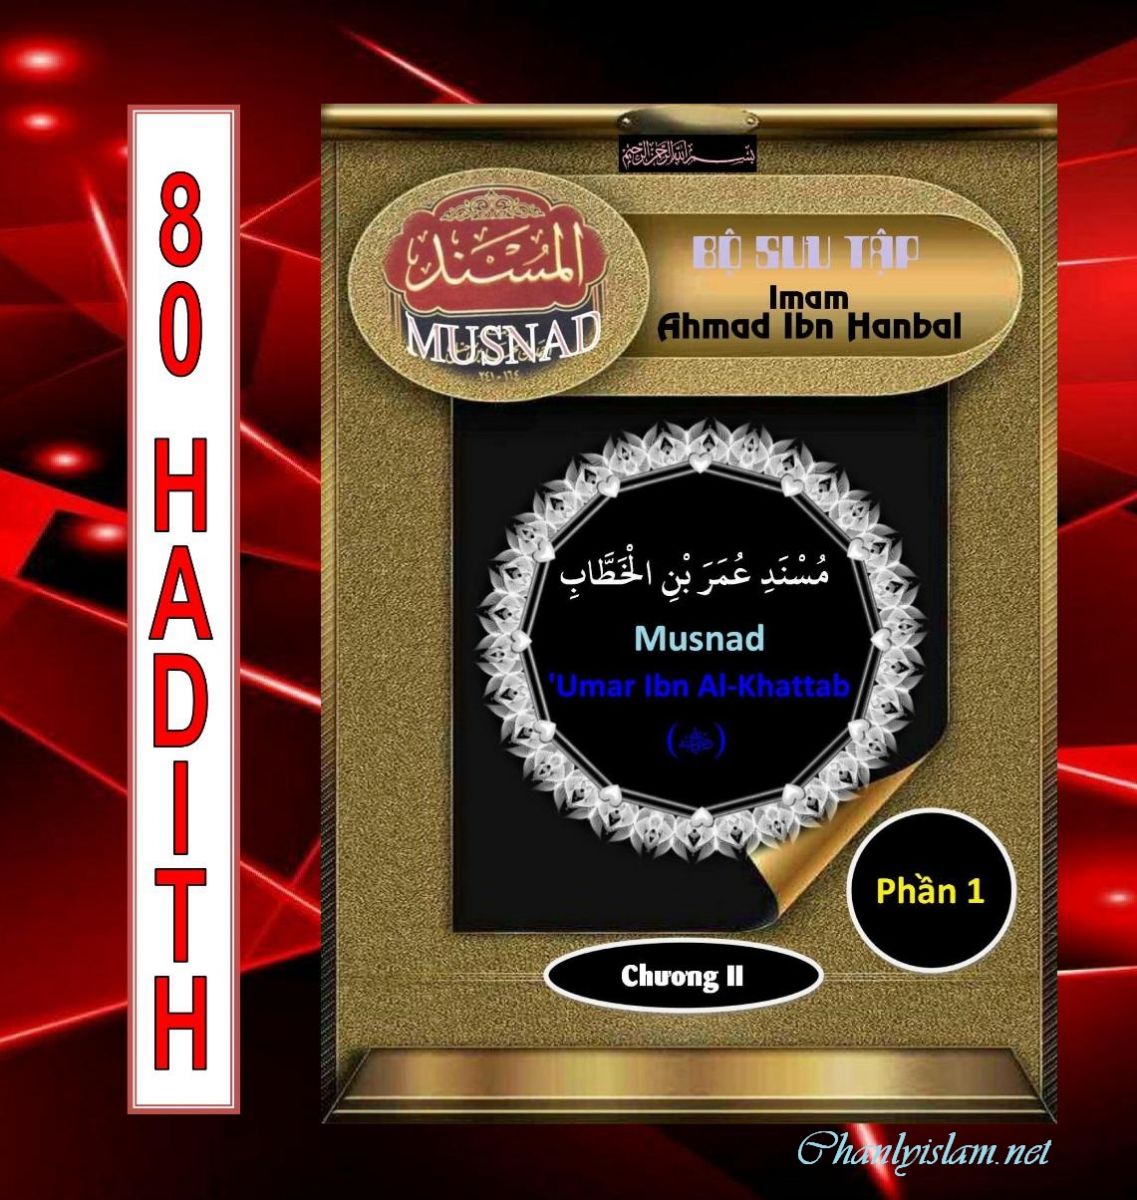 BỘ SƯU TẬP MUSNAD IMAM AHMAD IBN HANBAL - CHƯƠNG 2 - MUSNAD 'UMAR IBN AL-KHATTAB (R) - PHẦN 1